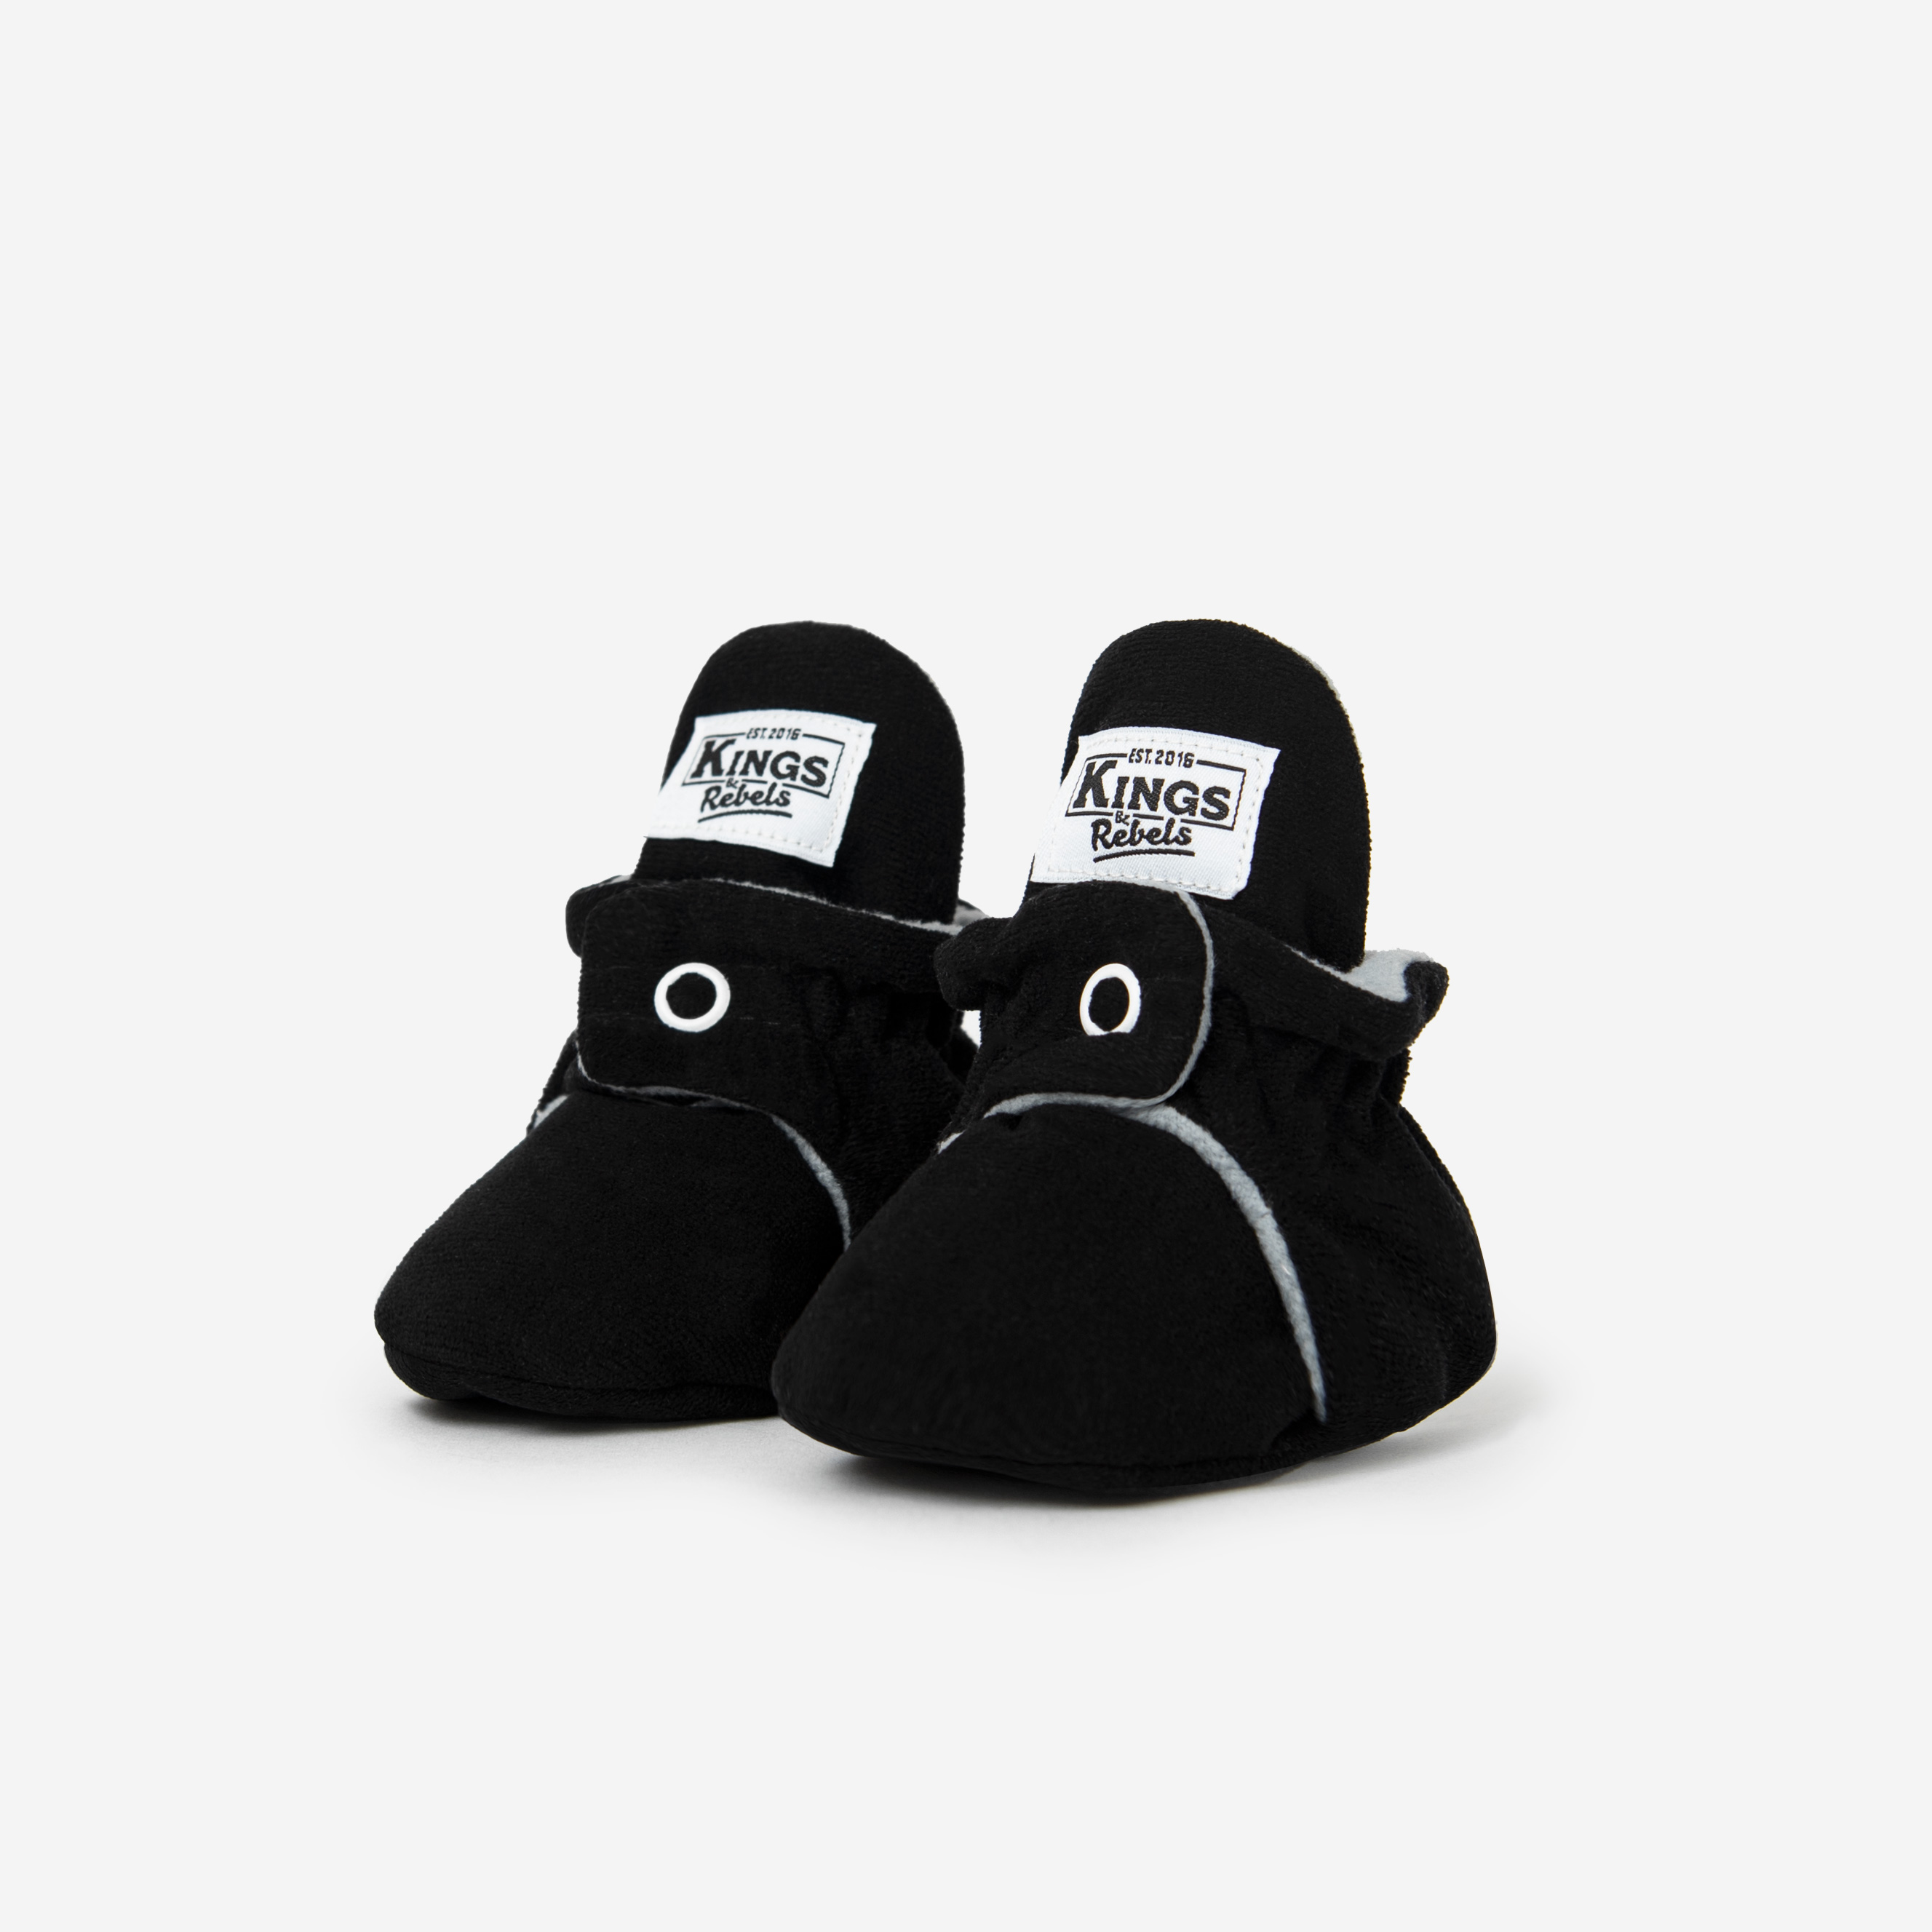 Schuhe & Co Classic/Gamuza schwarz Babyschühchen 3 Monate